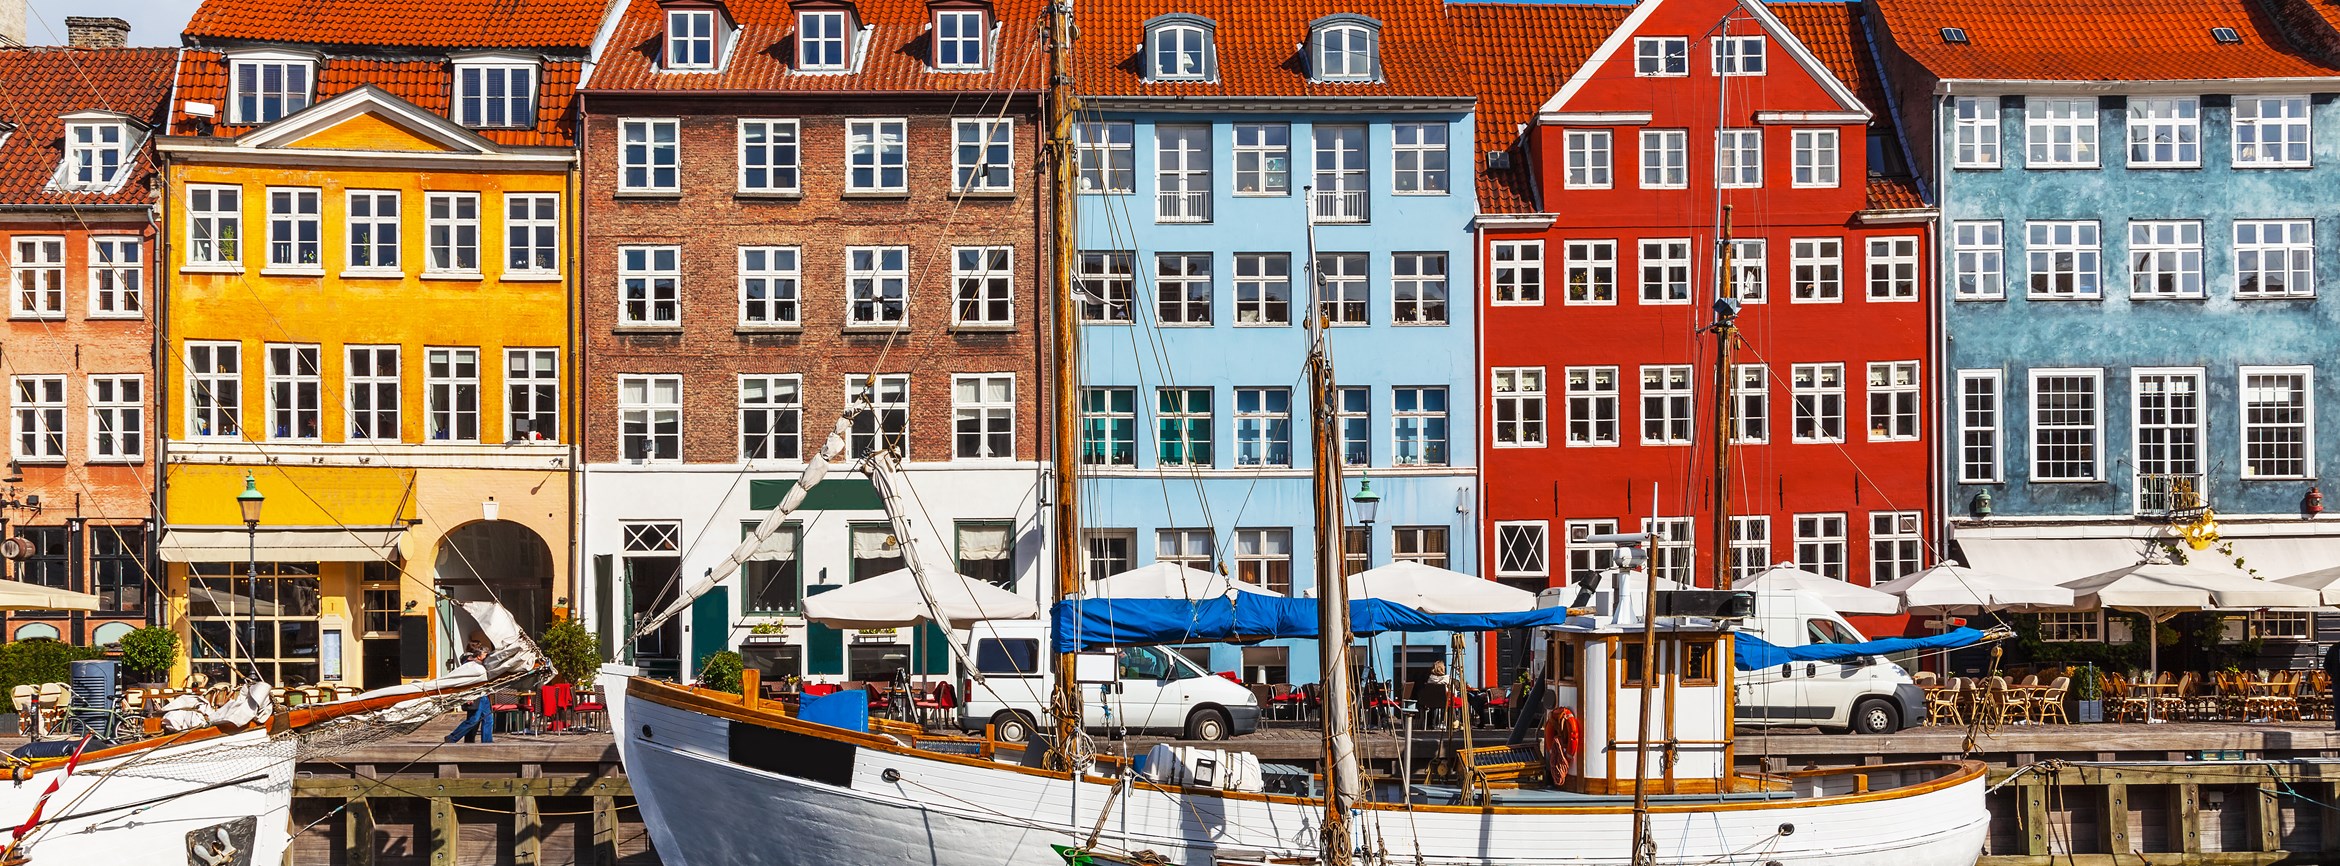 Nyhavn in Copehnagen, Denmark